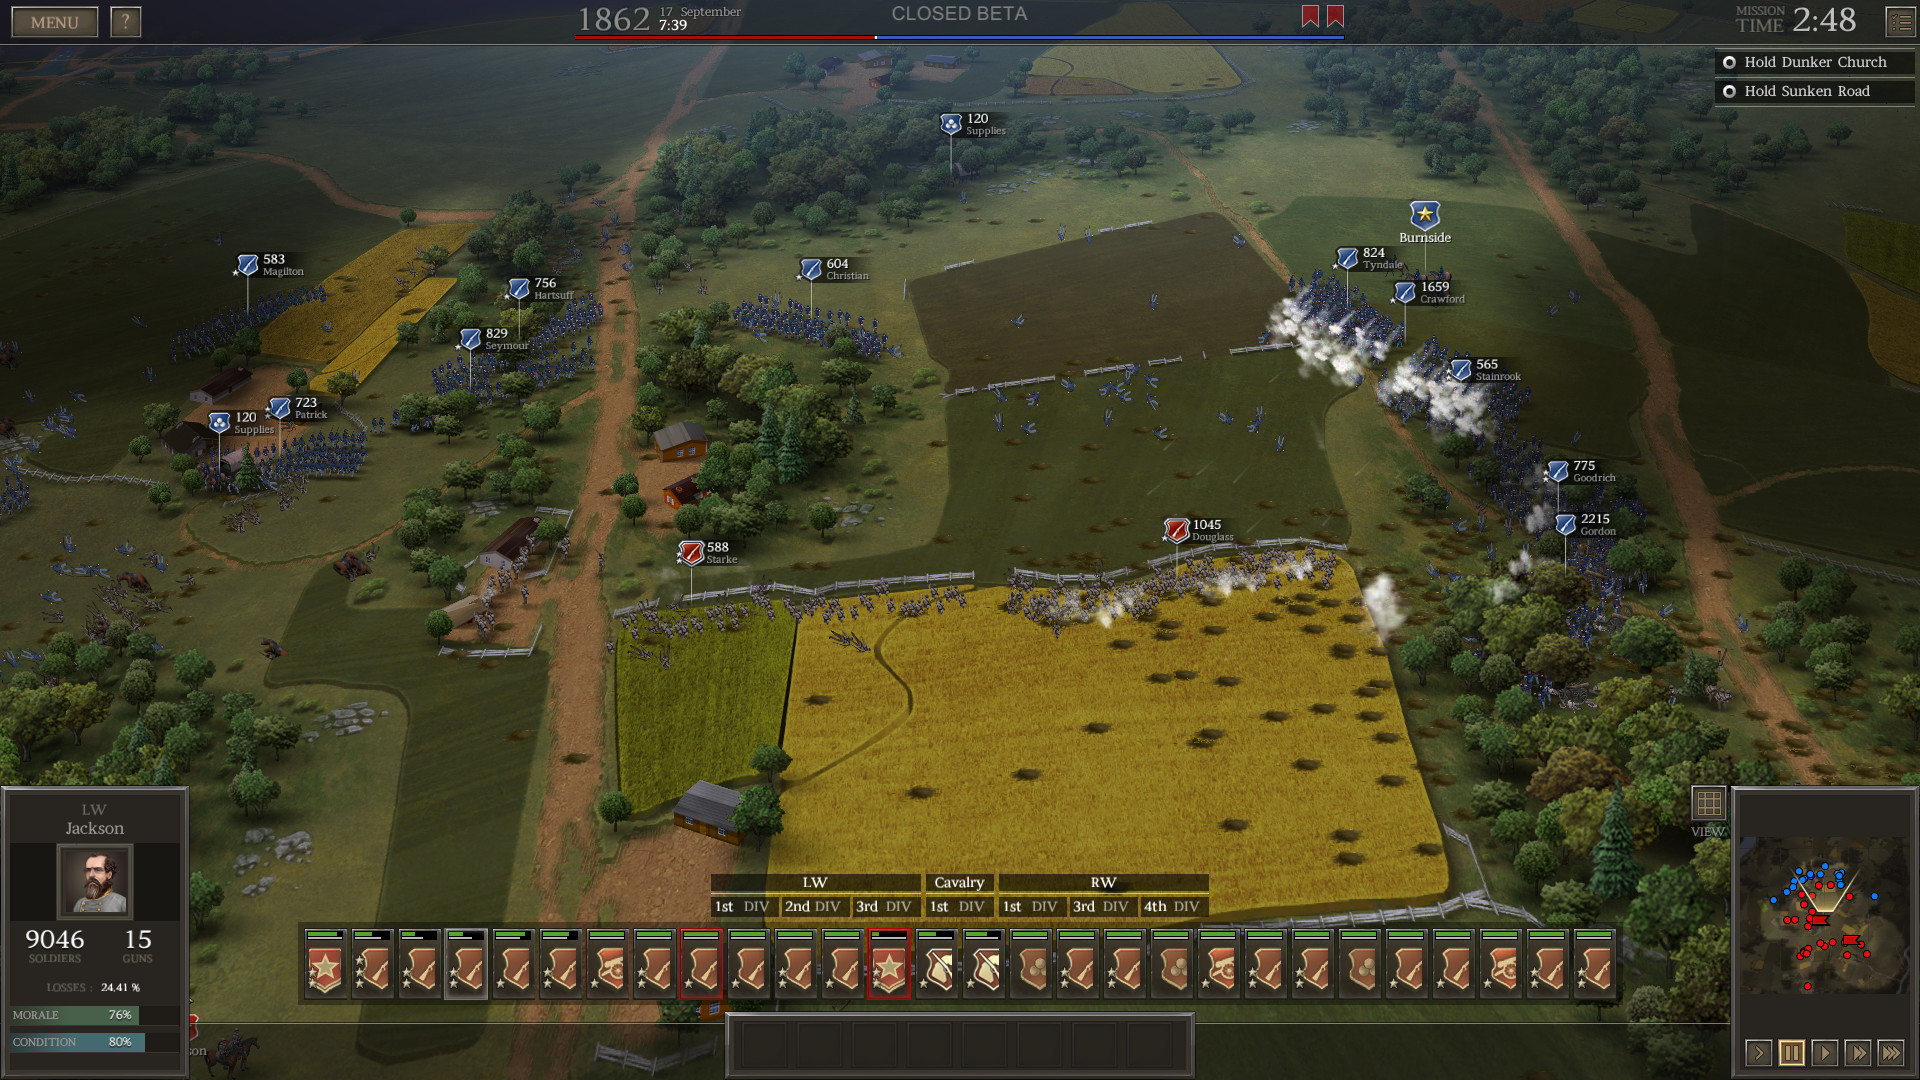 Ultimate General: Civil War - screenshot 5